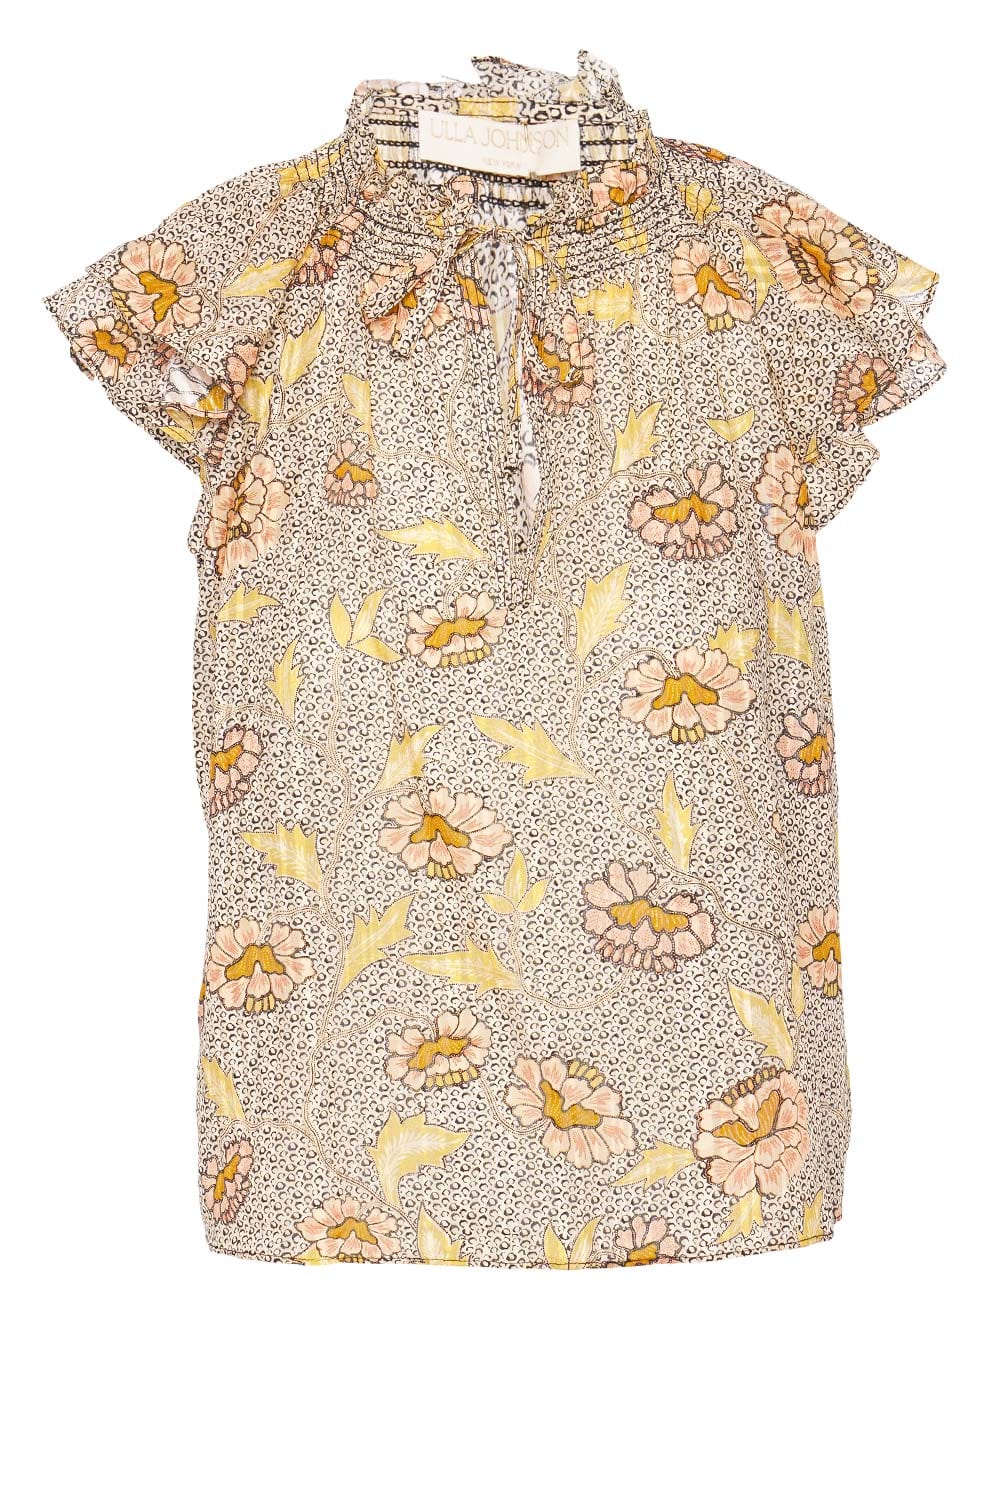 Ulla Johnson Annie Chrysanthemum Flutter Sleeve Top